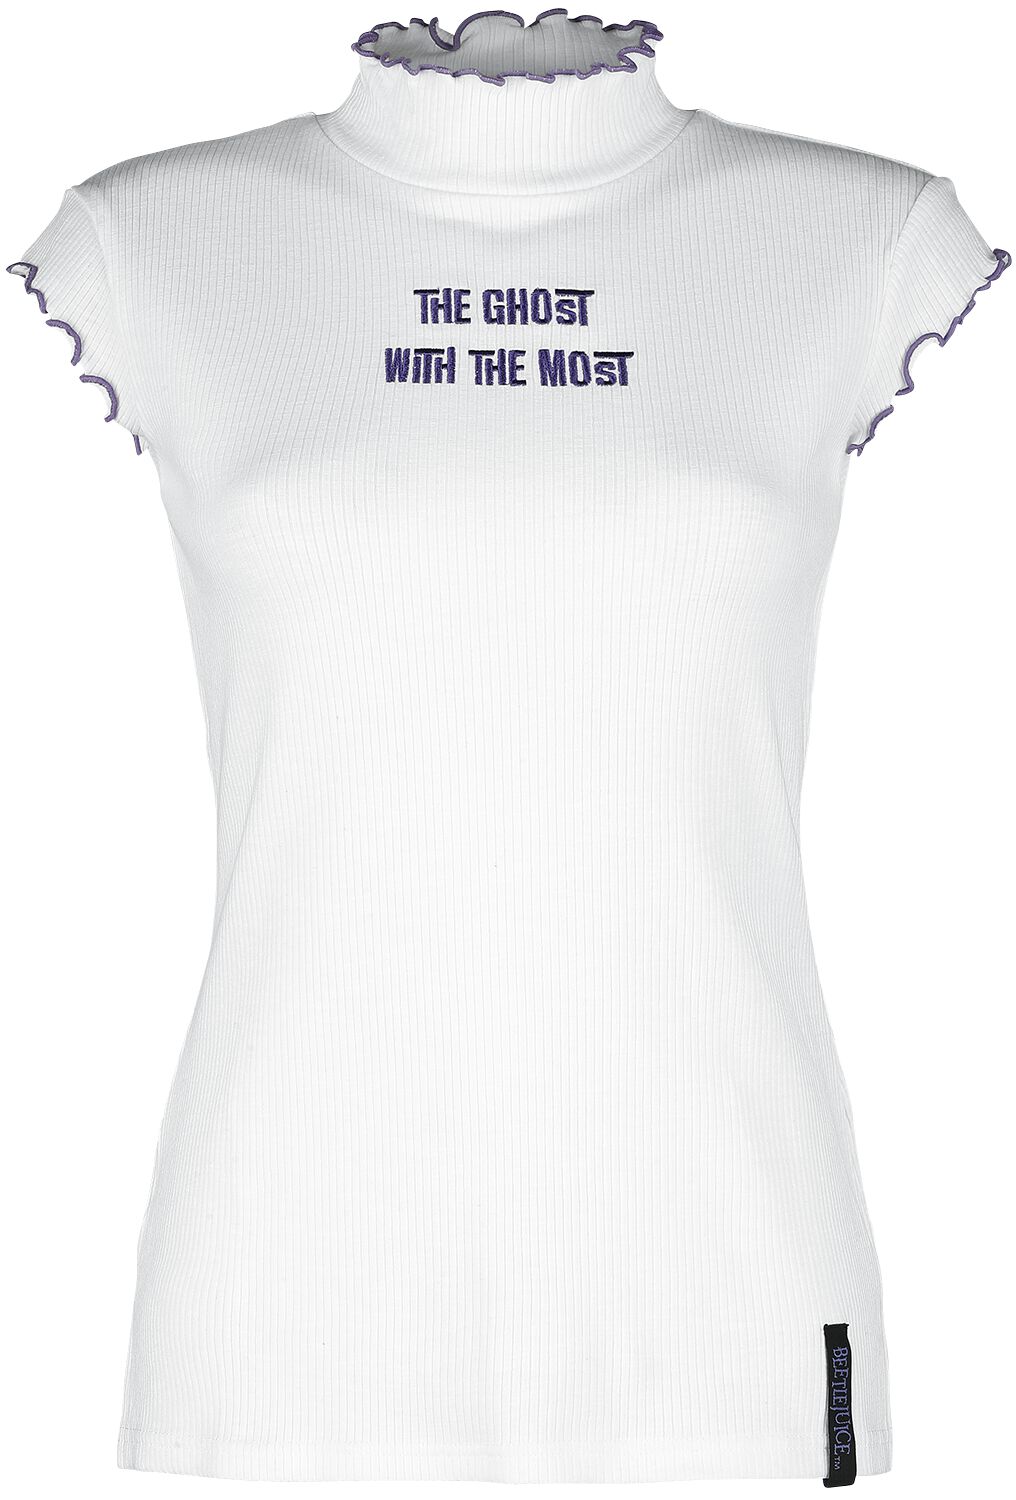 Beetlejuice T-Shirt - Ghost With The Most - XS bis XXL - für Damen - Größe XXL - weiß  - EMP exklusives Merchandise!